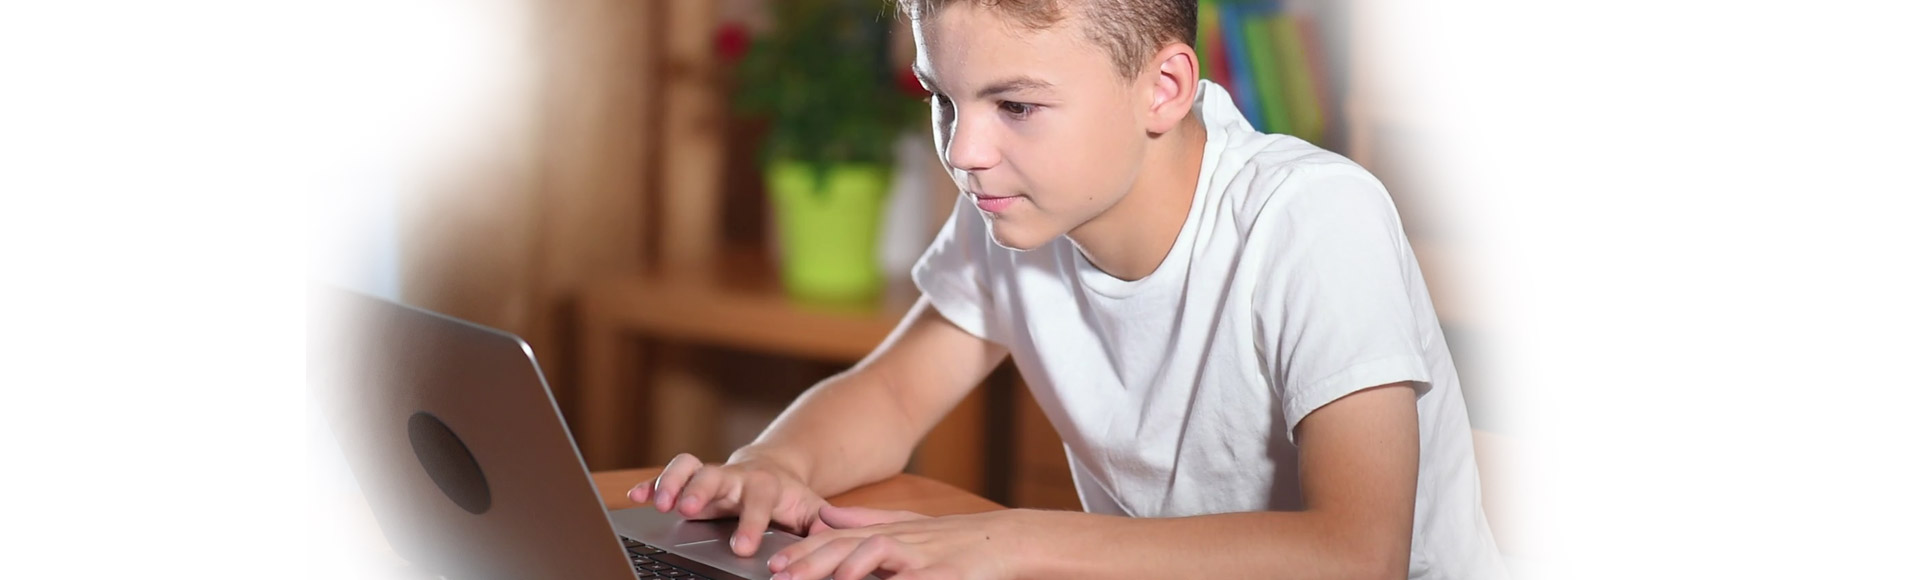 boy using laptop